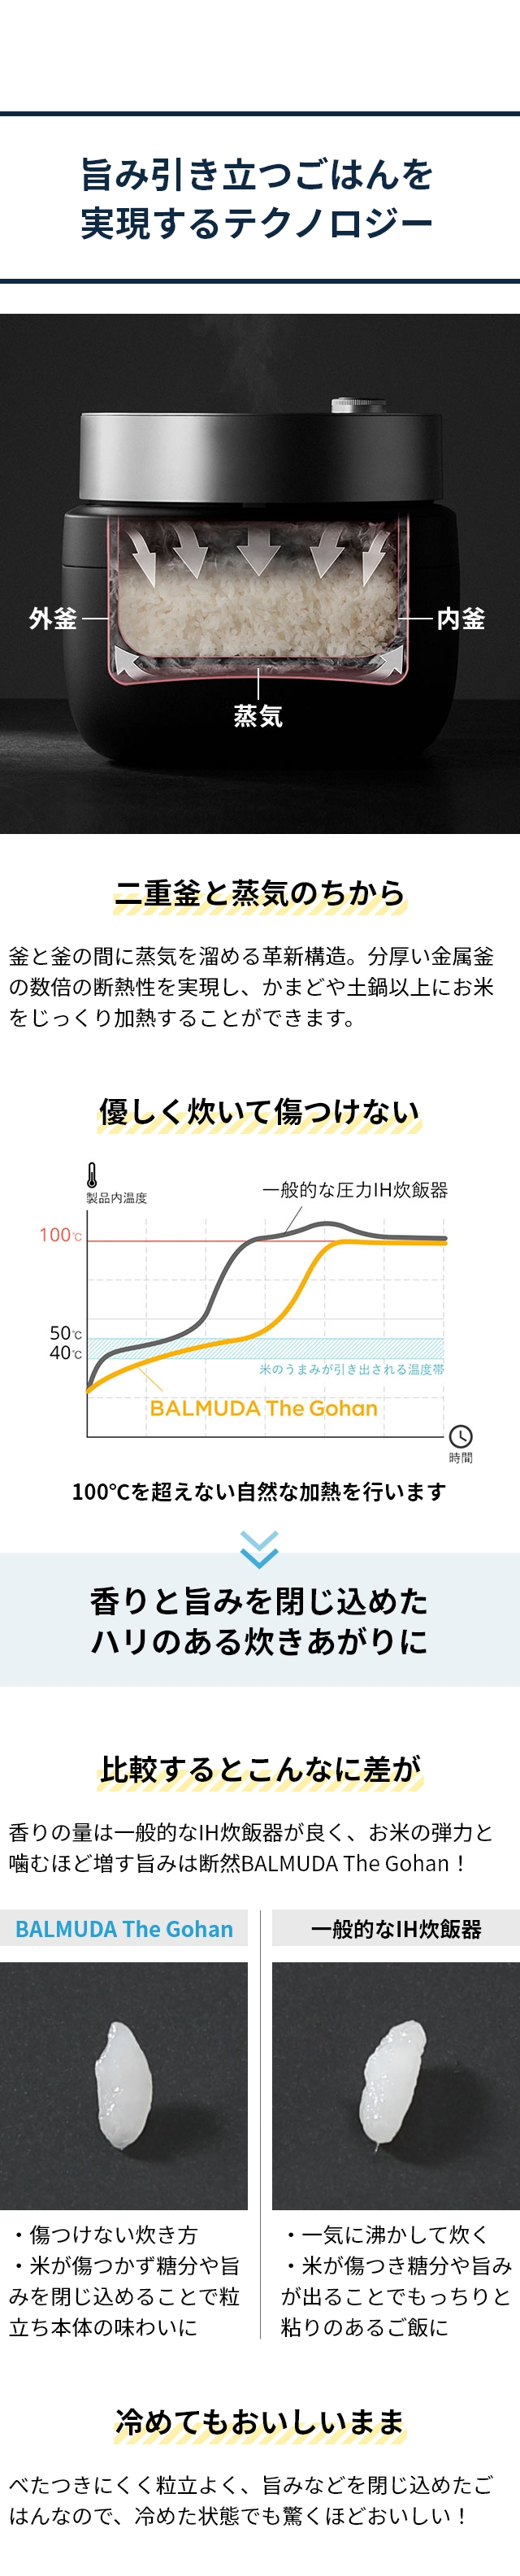 BBALMUDA The Gohan (バルミューダ ザ ゴハン) K08A：旨み引き立つごはんを実現するテクノロジー